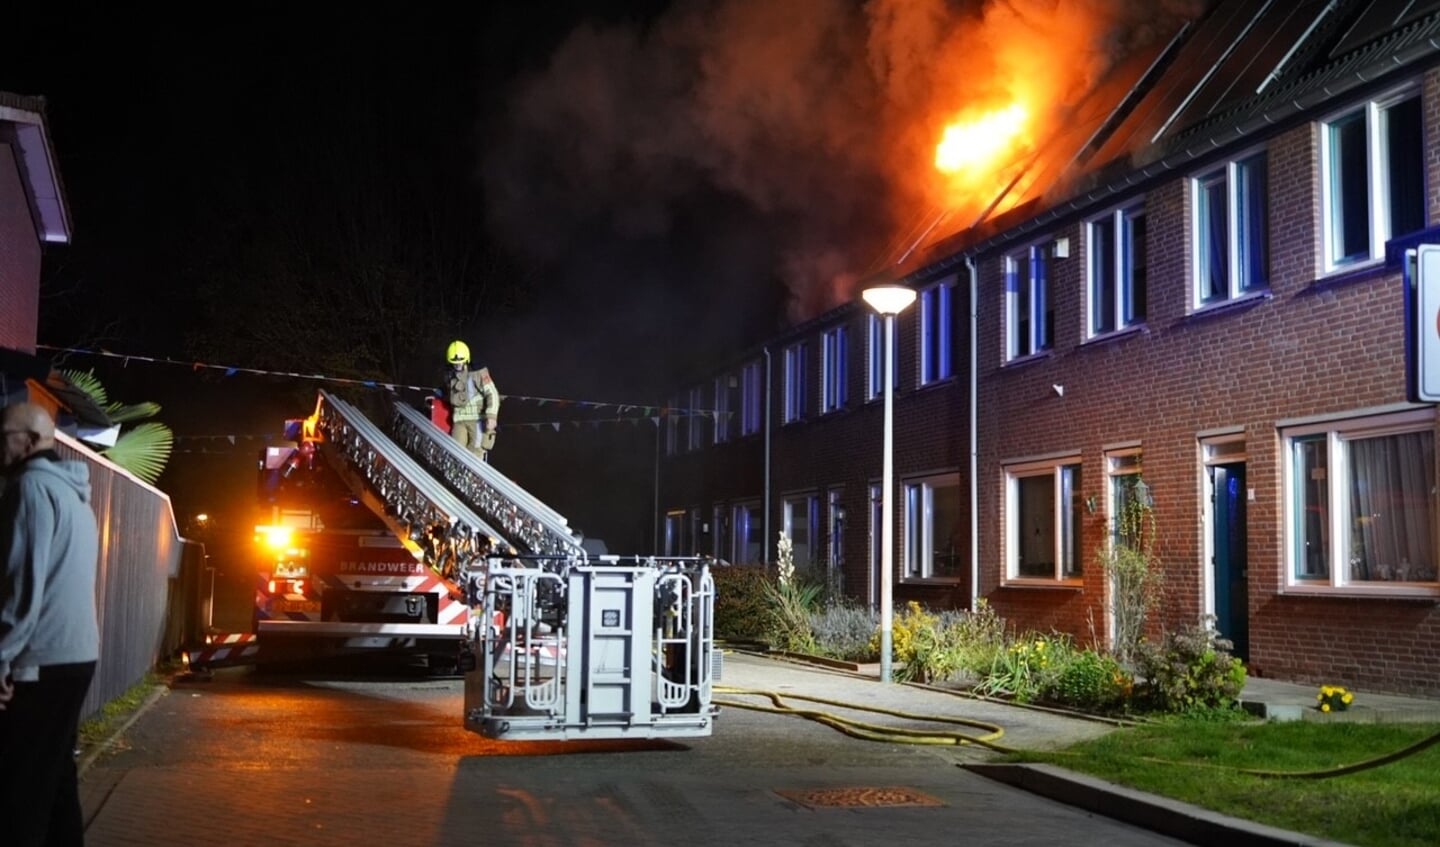 Uitslaande brand in woning Fagotstraat. 